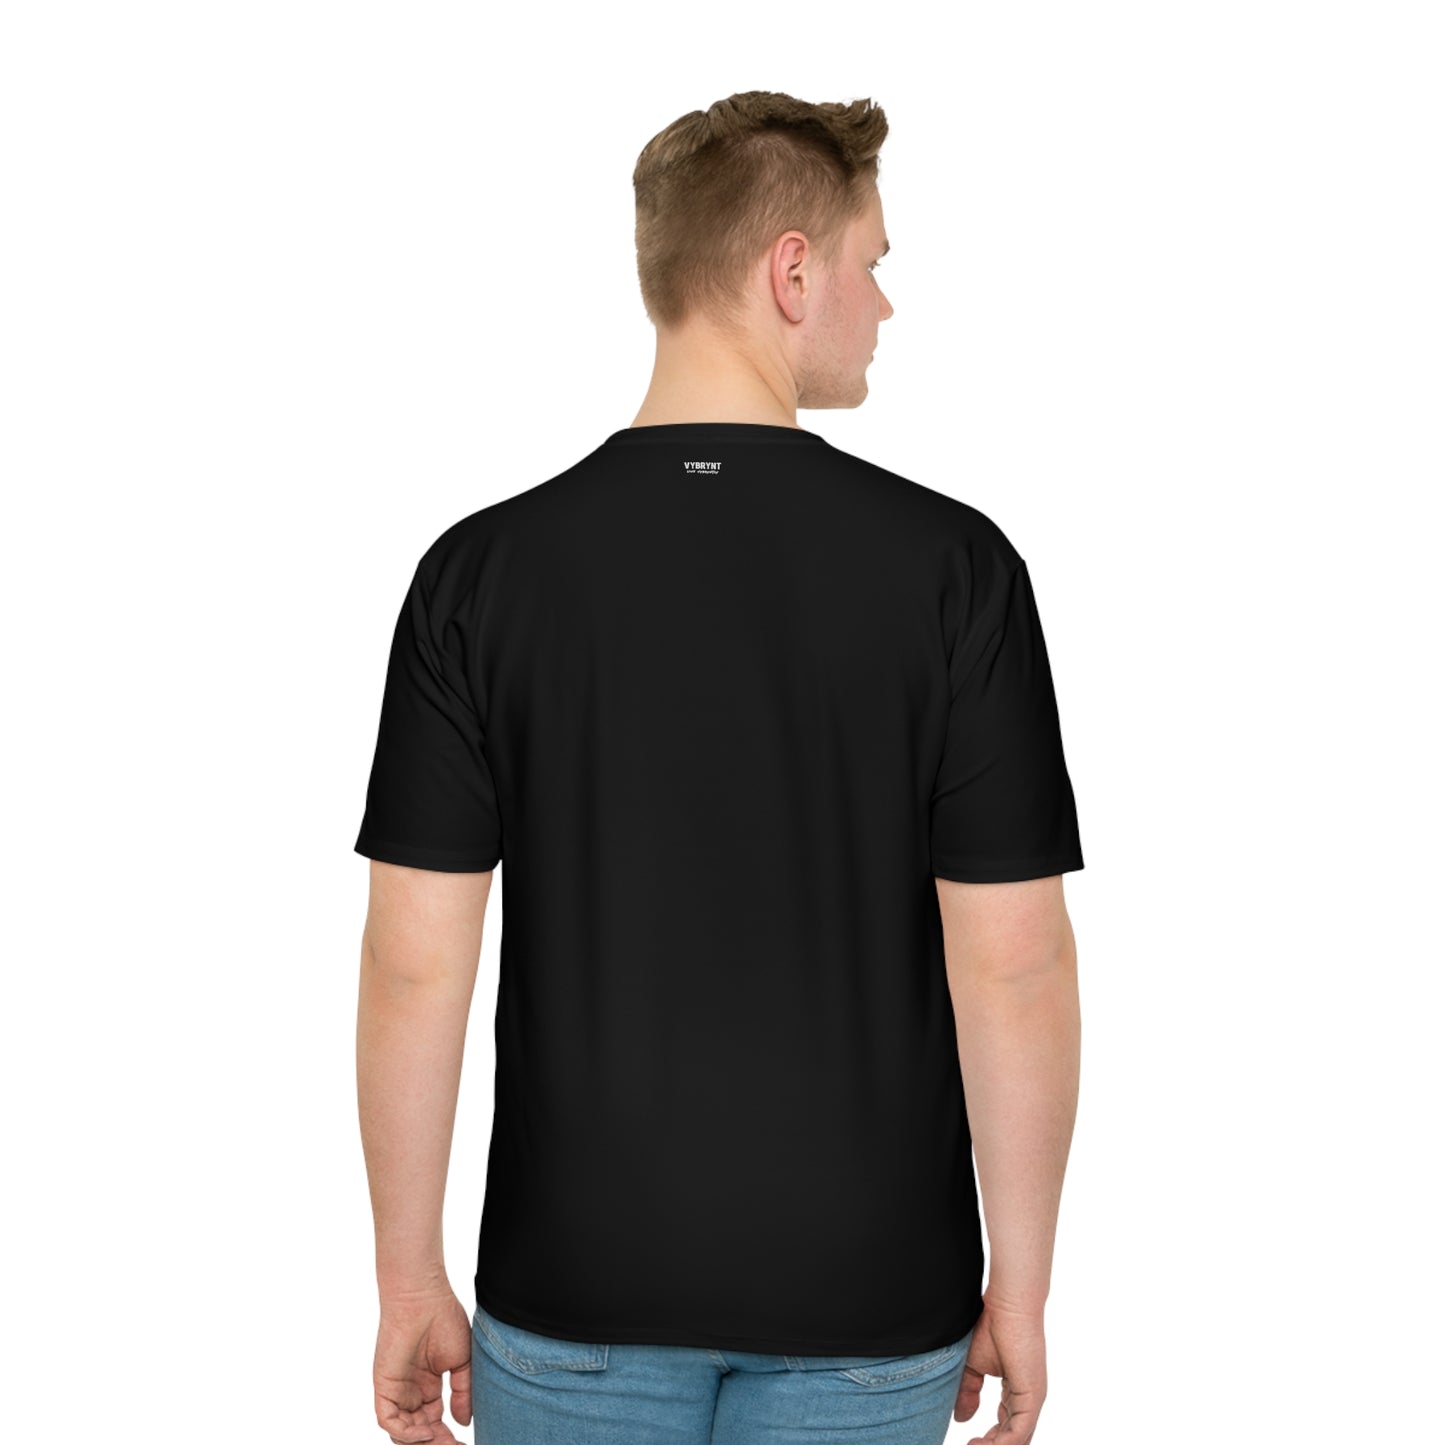 Splattered Sophistication Men's Black T-shirt